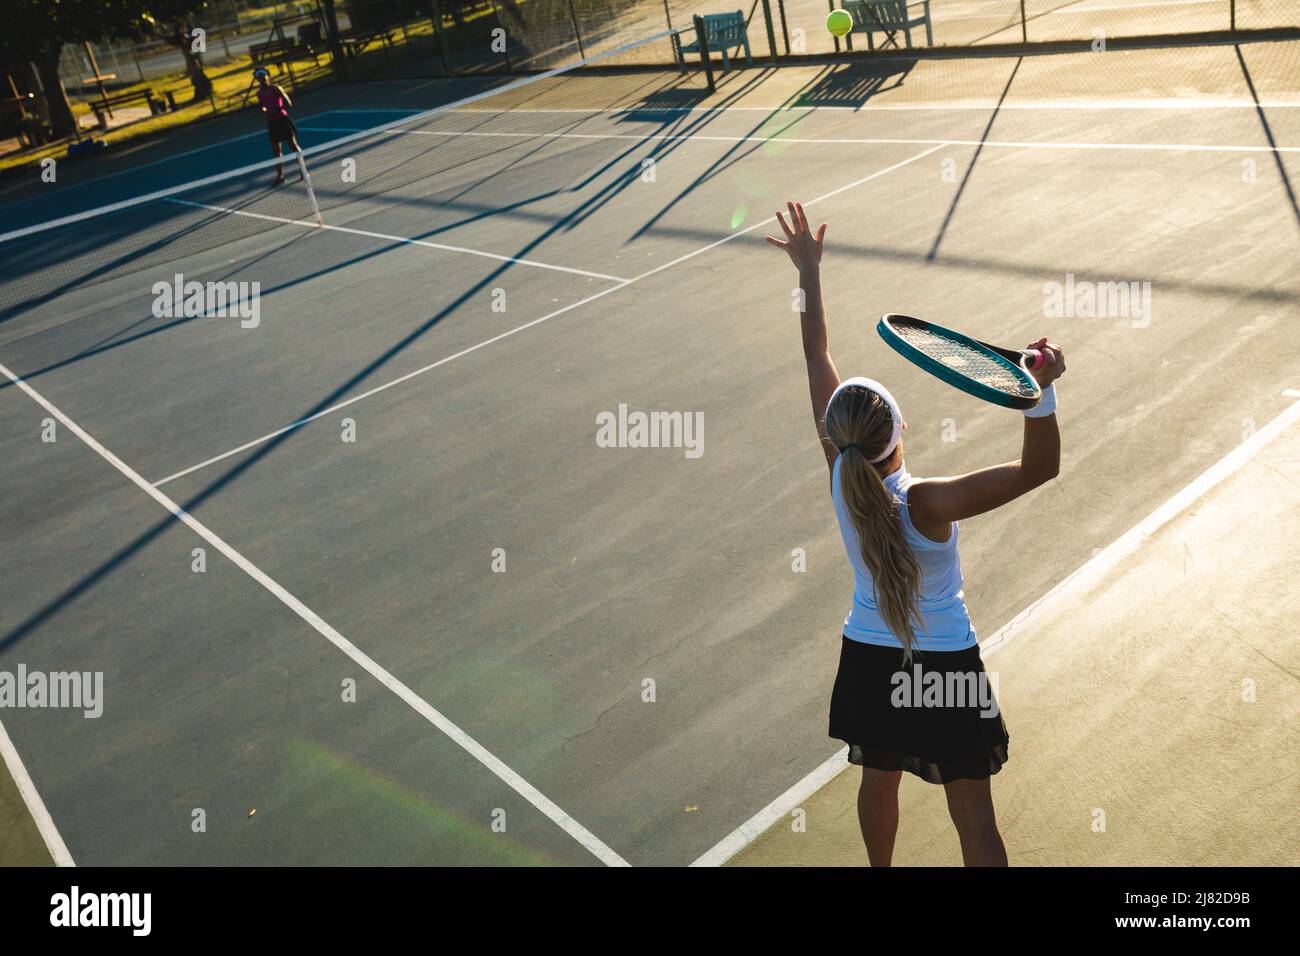 Blick aus der Perspektive auf die junge kaukasische Spielerin, die während eines Tennisspiels auf dem Platz spielt Stockfoto